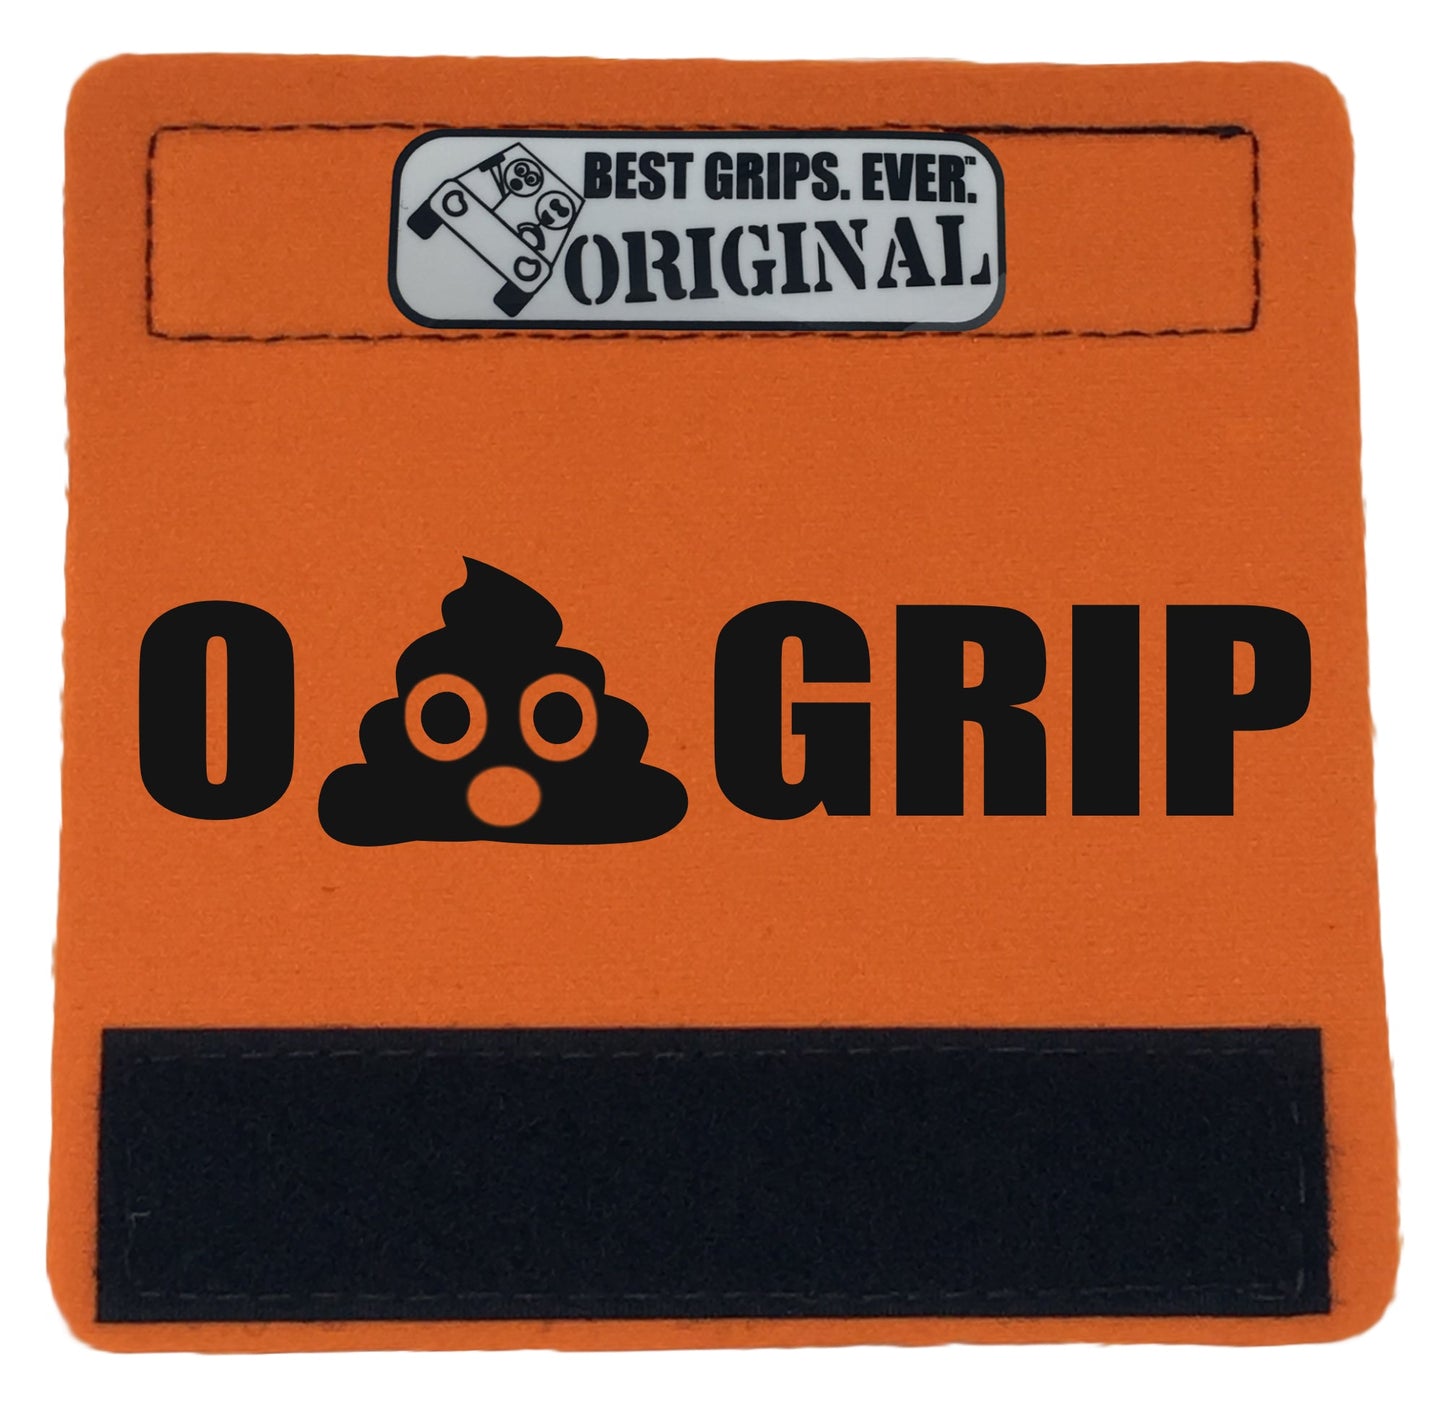 The Emoji Poo Grip. - BEST GRIPS. EVER.®